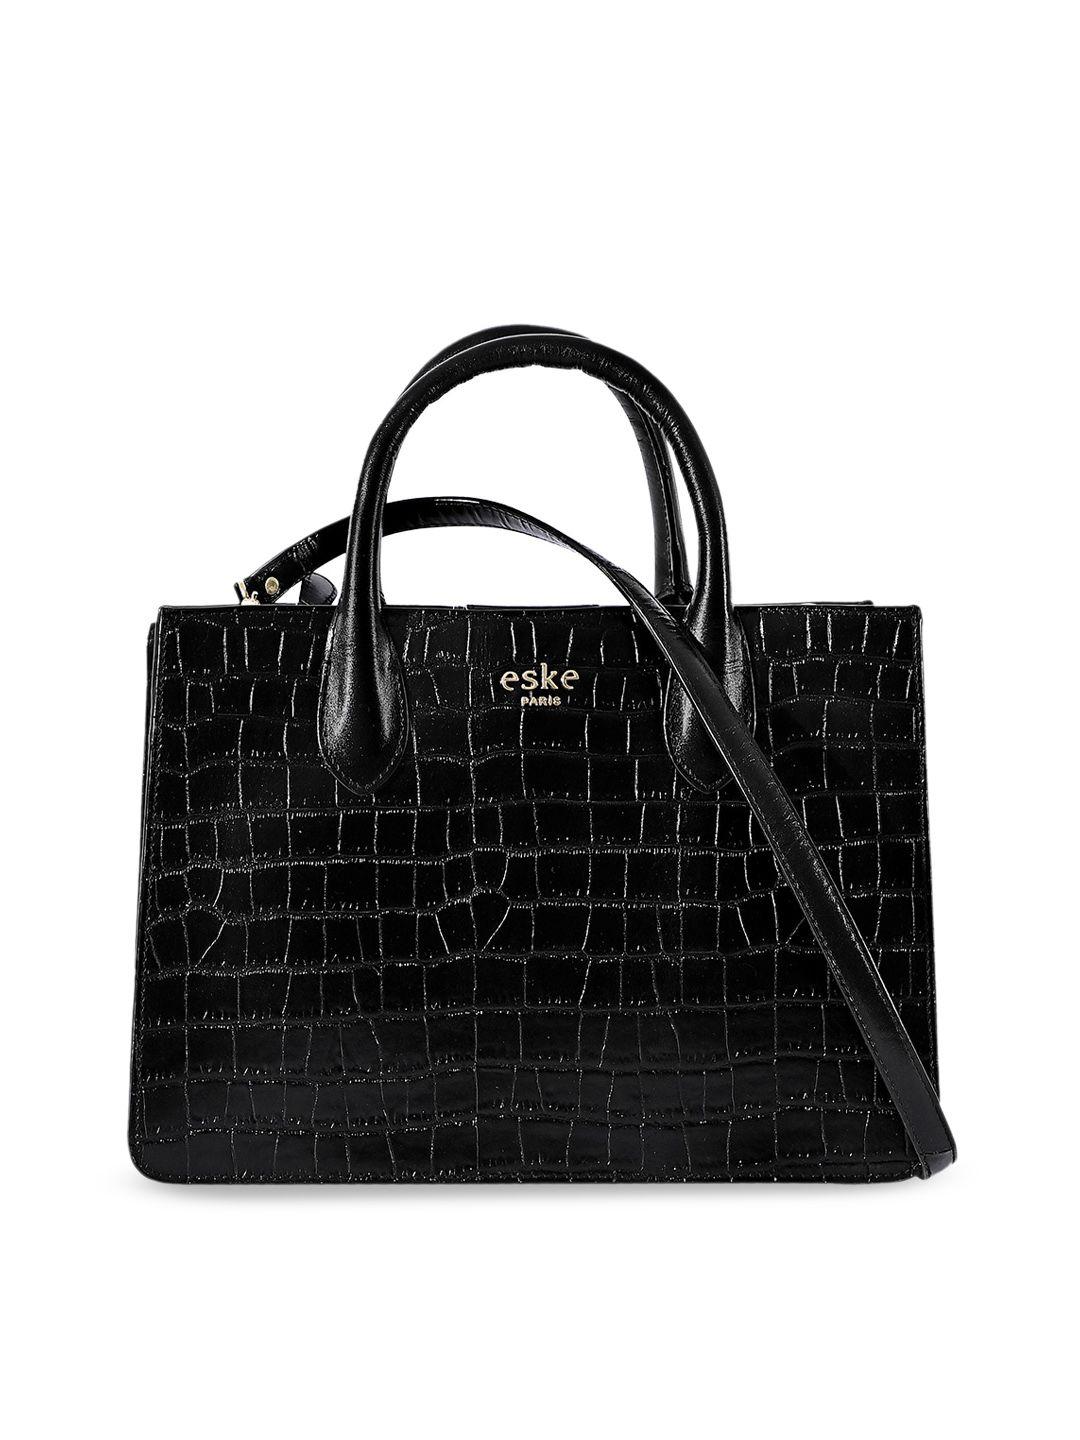 eske black animal textured leather structured handheld bag